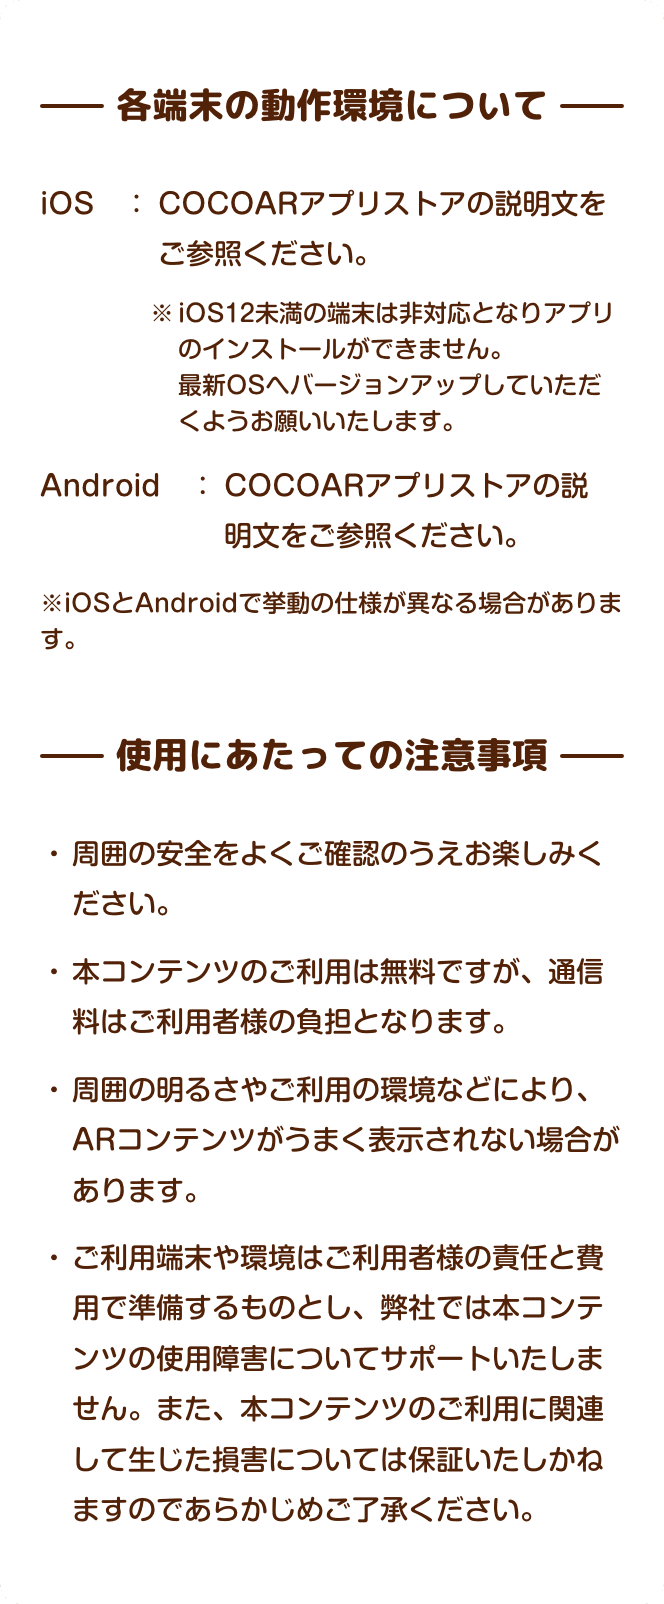 各端末の動作環境について iOS　：COCOARアプリストアの説明文をご参照ください。 ※iOS12未満の端末は非対応となりアプリのインストールができません。最新OSへバージョンアップしていただくようお願いいたします。 Android　： COCOARアプリストアの説明文をご参照ください。 ※iPhoneとandroidで少し挙動の仕様が違います。 使用にあたっての注意事項  周囲の安全をよくご確認のうえお楽しみください。 本コンテンツのご利用は無料ですが、通信料はご利用者様の負担となります。 周囲の明るさやご利用の環境などにより、ARコンテンツがうまく表示されない場合があります。 ご利用端末や環境はご利用者様の責任と費用で準備するものとし、弊社では本コンテンツの使用障害についてサポートいたしません。また、本コンテンツのご利用に関連して生じた損害については保証いたしかねますのであらかじめご了承ください。